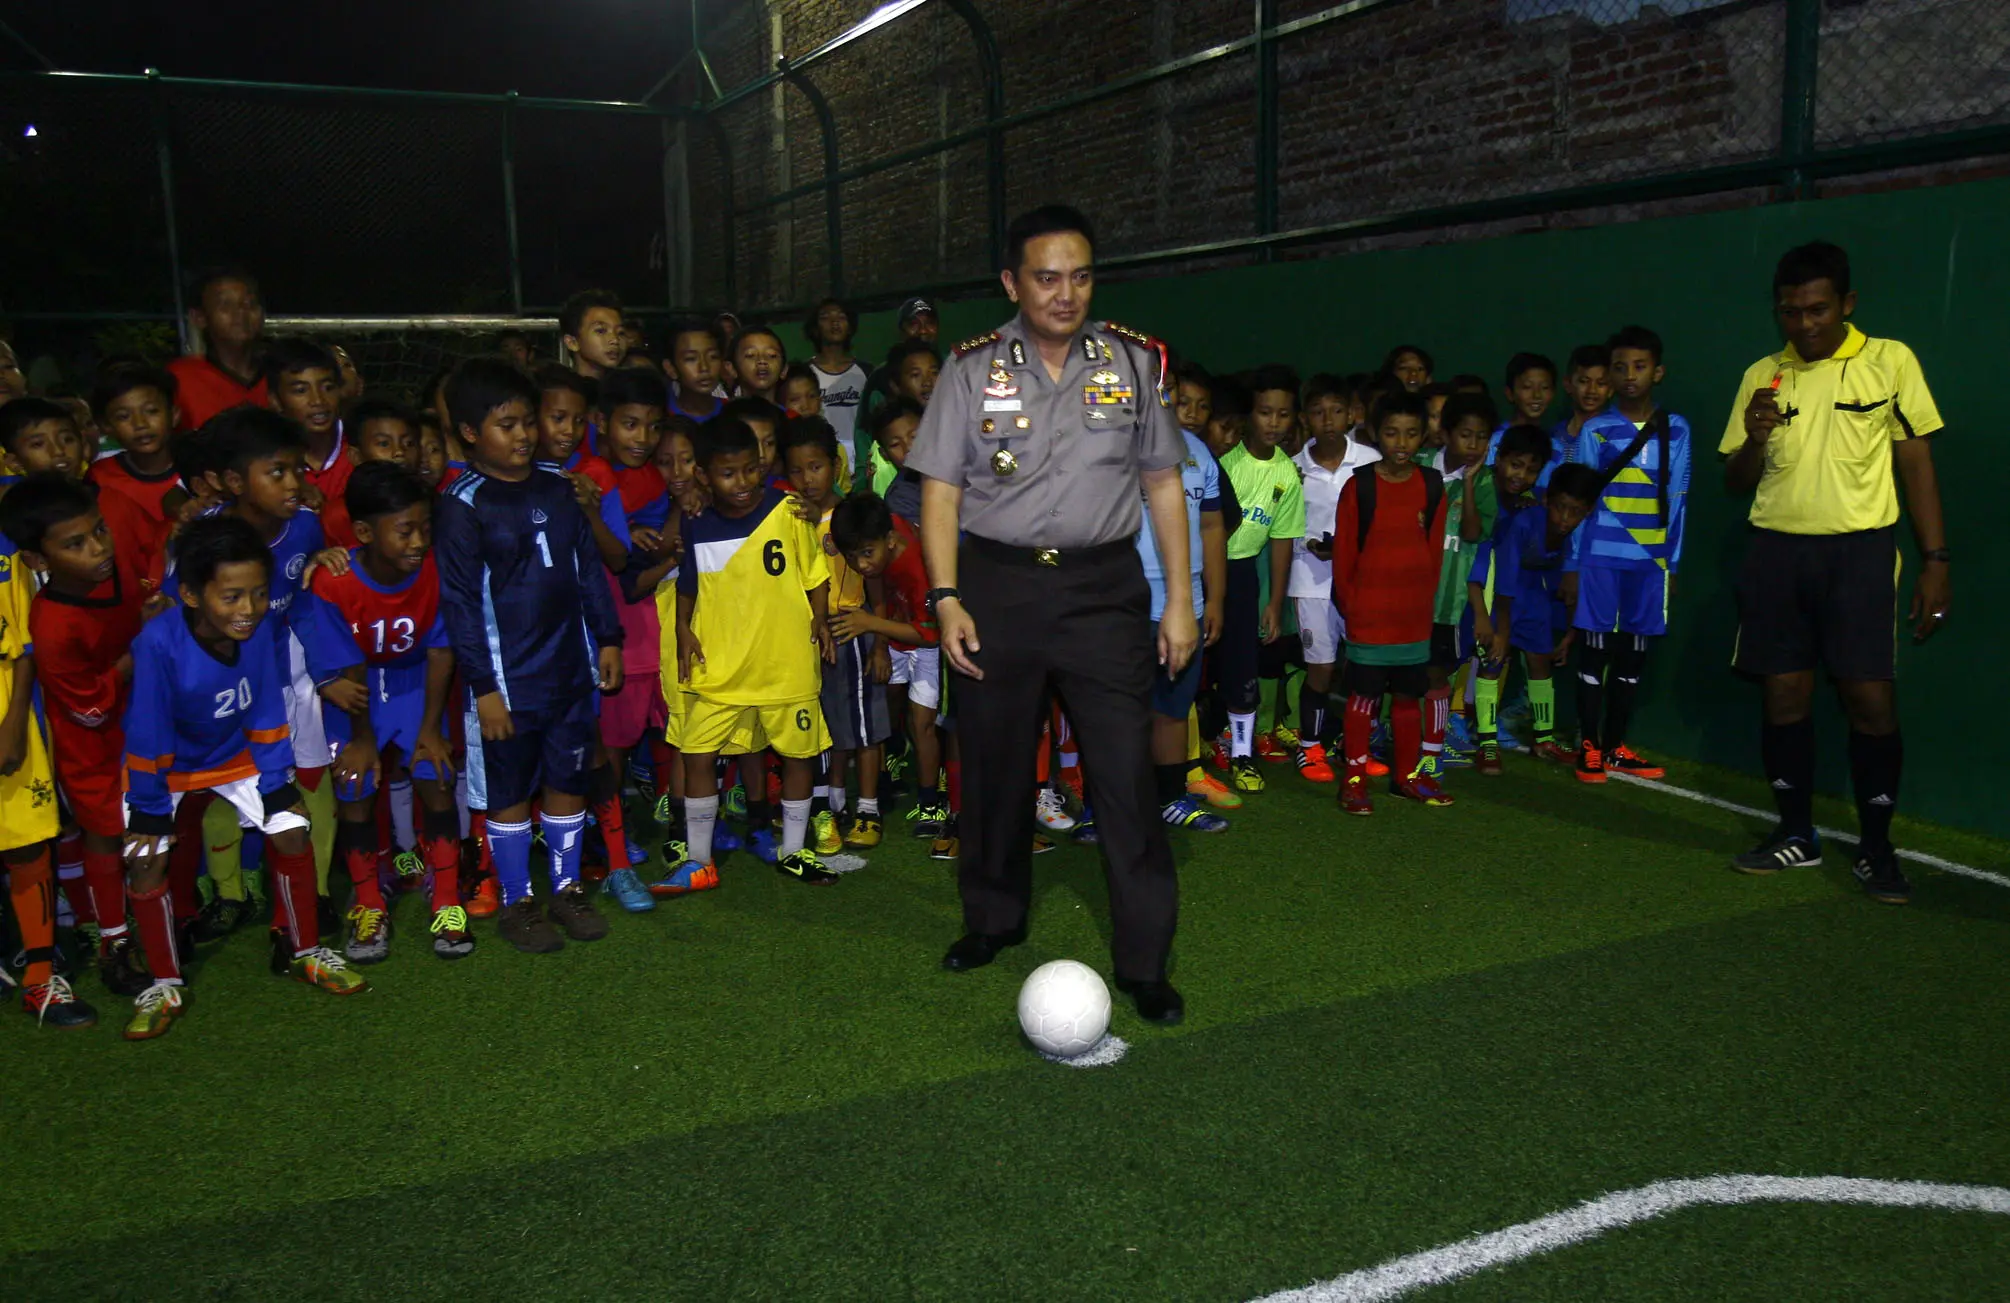 Kampung eks Gang Dolly ini sudah disulap jadi ajang turnamen futsal level anak-anak selama Ramadan. (Liputan6.com/Dian Kurniawan).